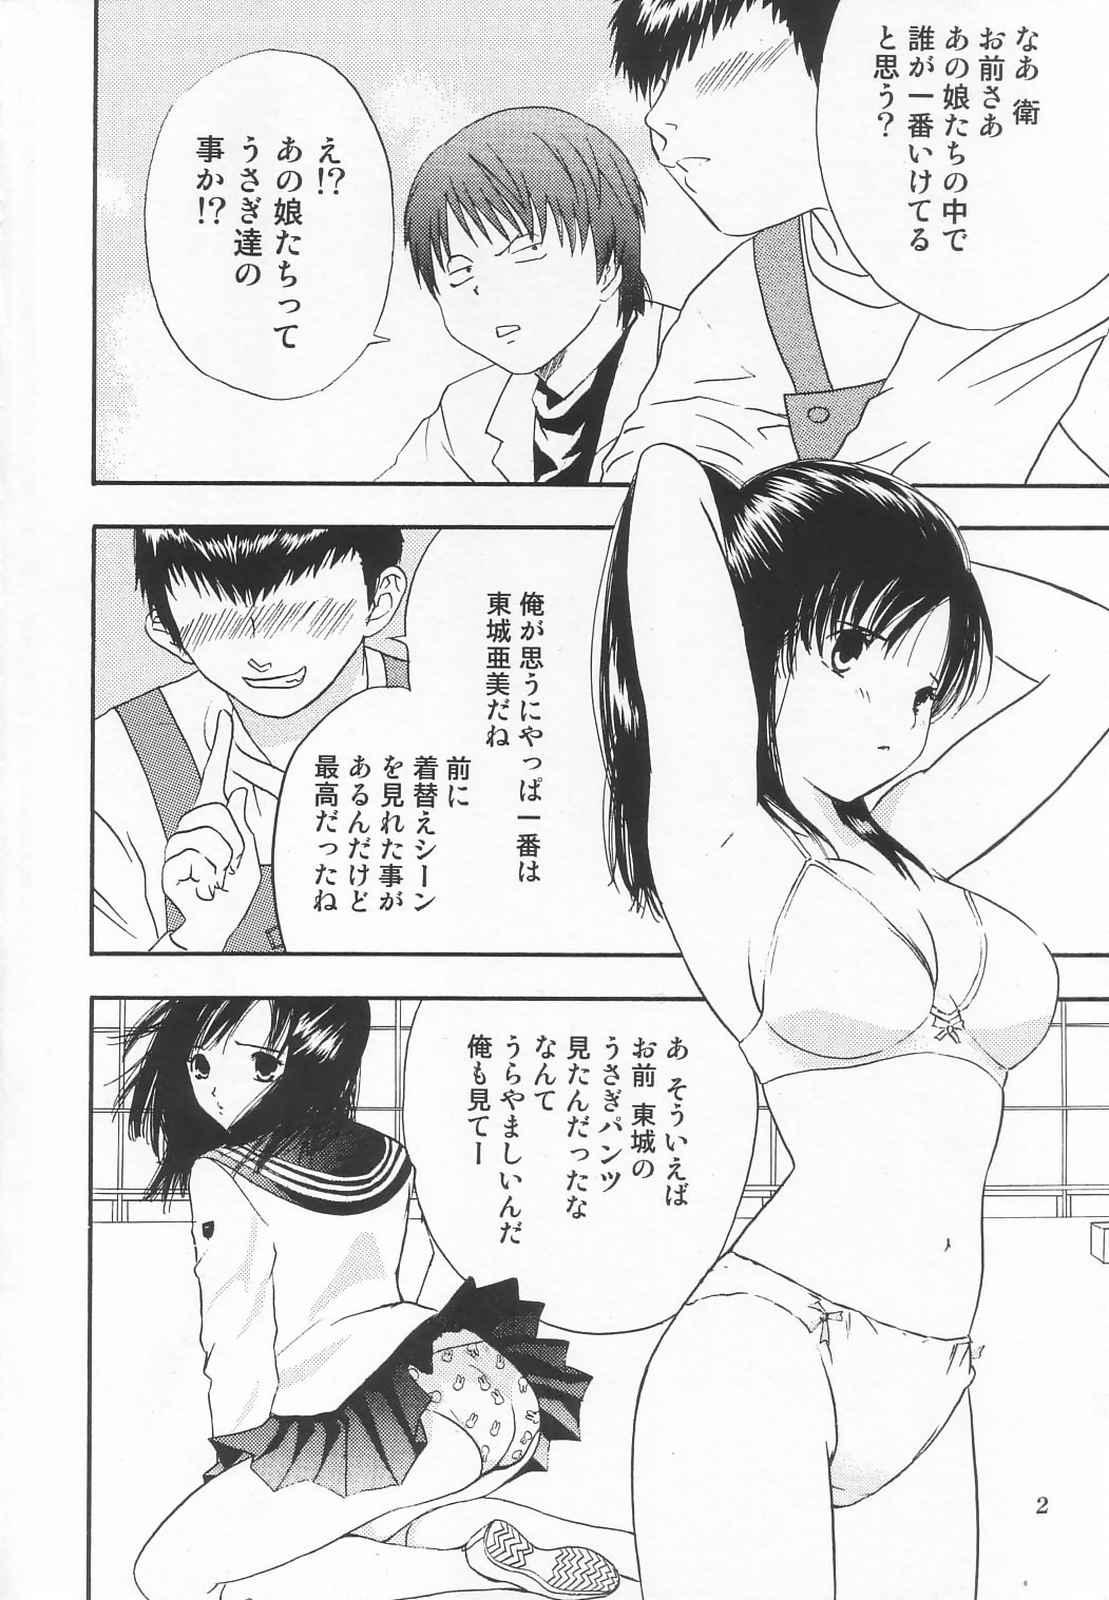 Amatures Gone Wild Tokusatsu Magazine x 2003 Fuyu Gou - Sailor moon Ichigo 100 Speculum - Page 4